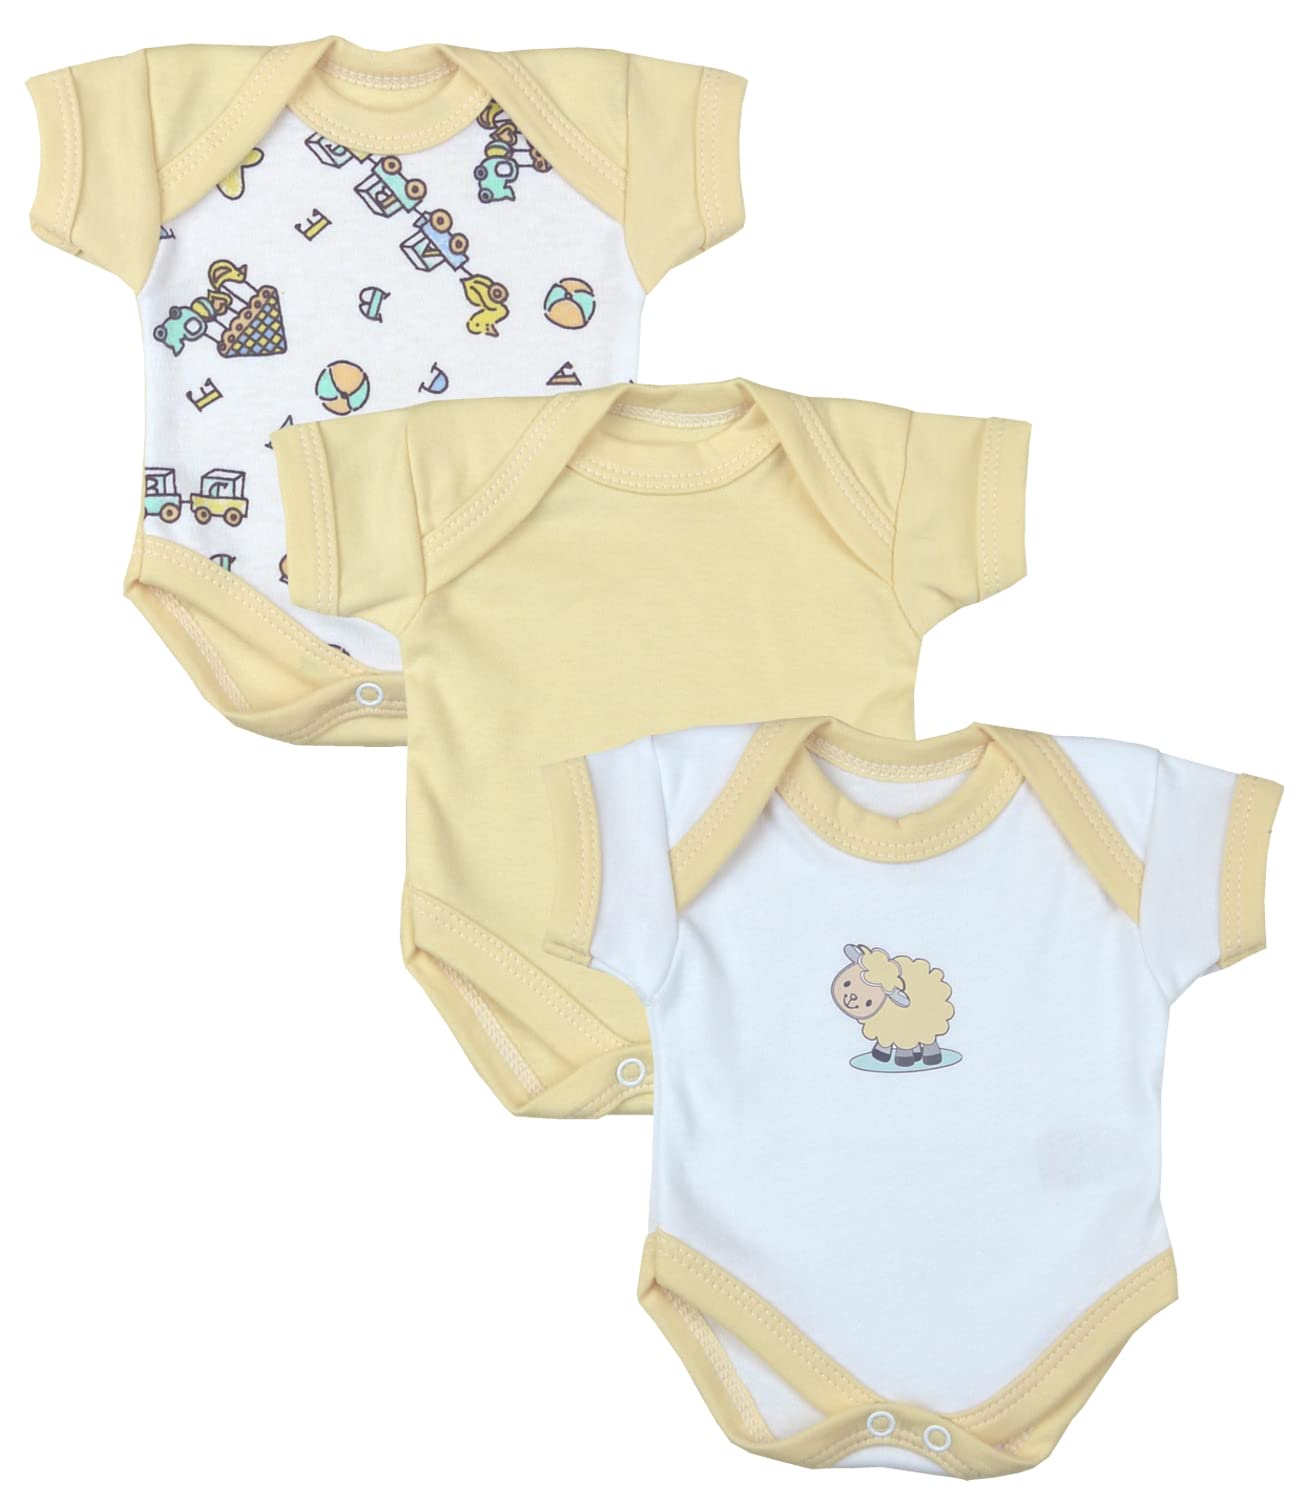 Babyprem Premature Early Baby Clothes Bodysuits 3 Pc Lemon Retro Toys 1.5lb - 3 months (32-38 Size)